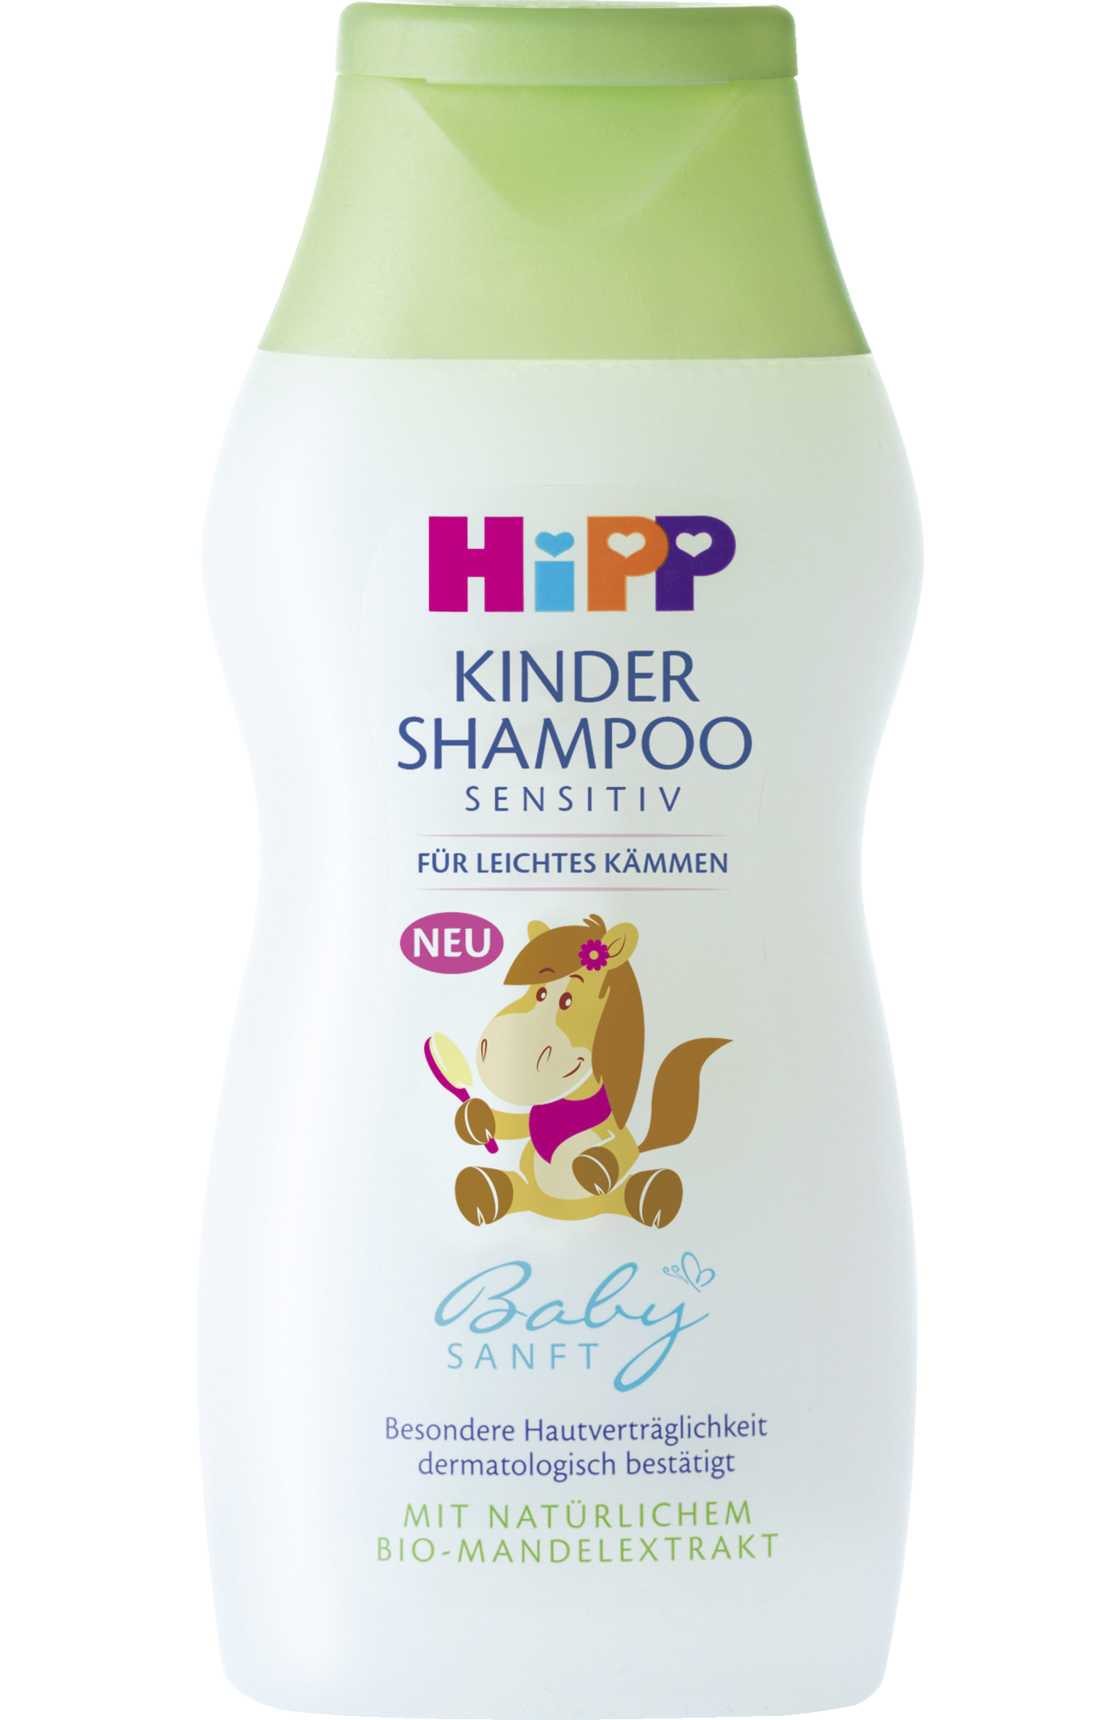 hipp-kinder-shampoo